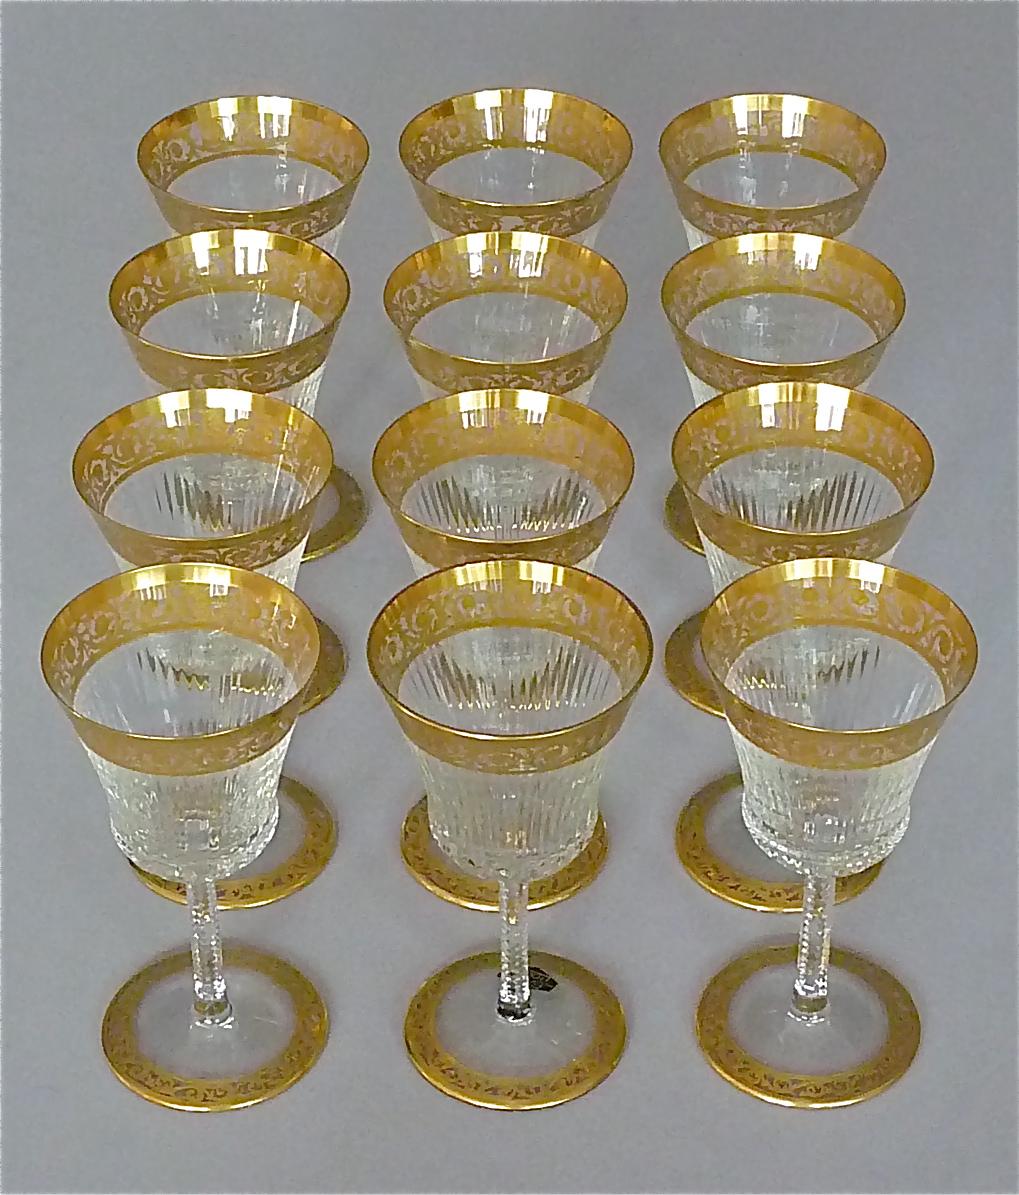 Art Nouveau Set of 12 Saint Louis Gilt Crystal Wine Glasses Thistle 1950s French Stemware